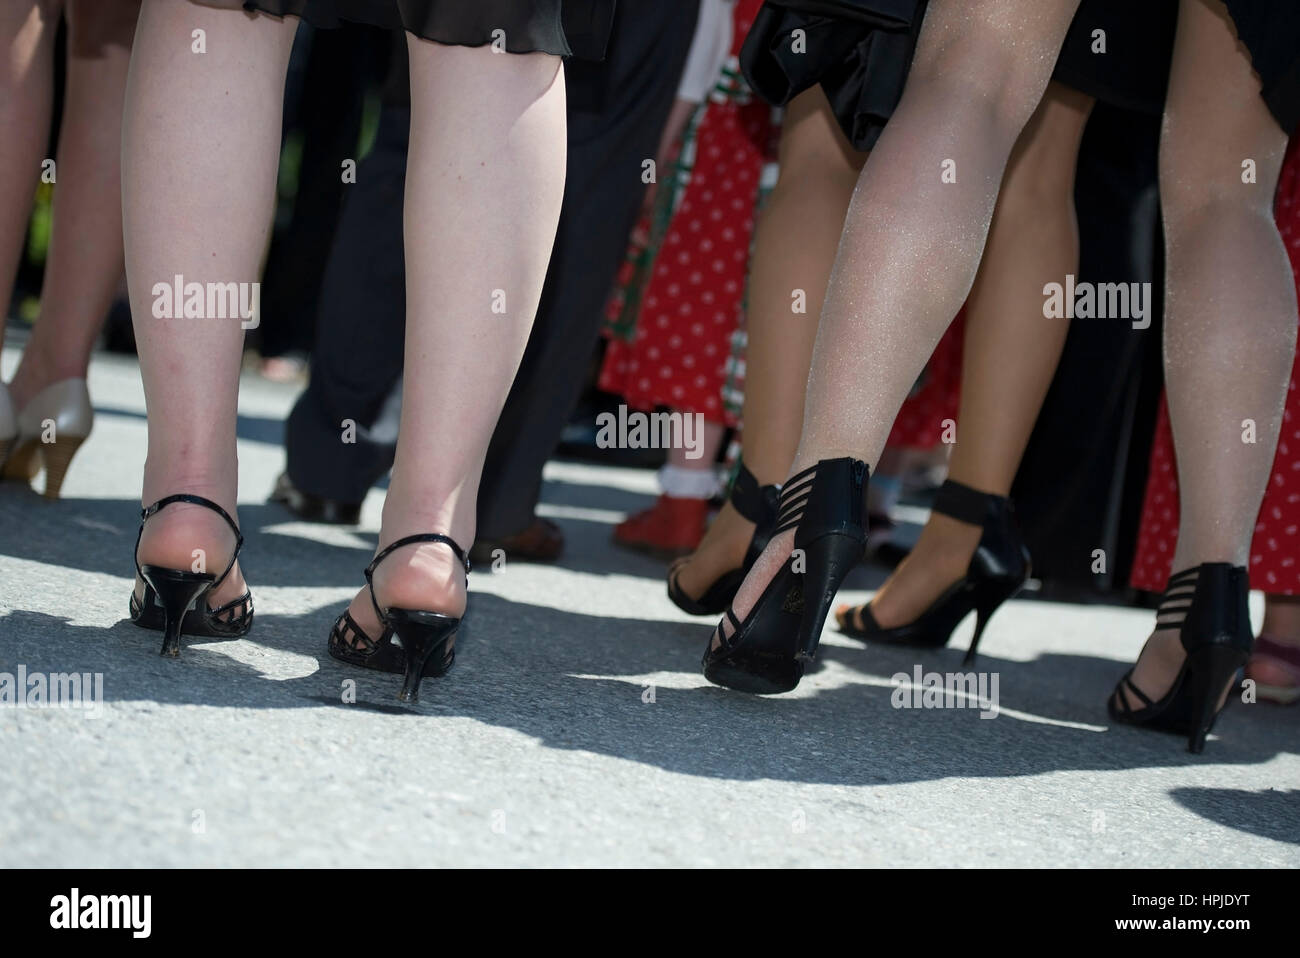 Frauenbeine in Stoeckelschuhen - women legs Stock Photo